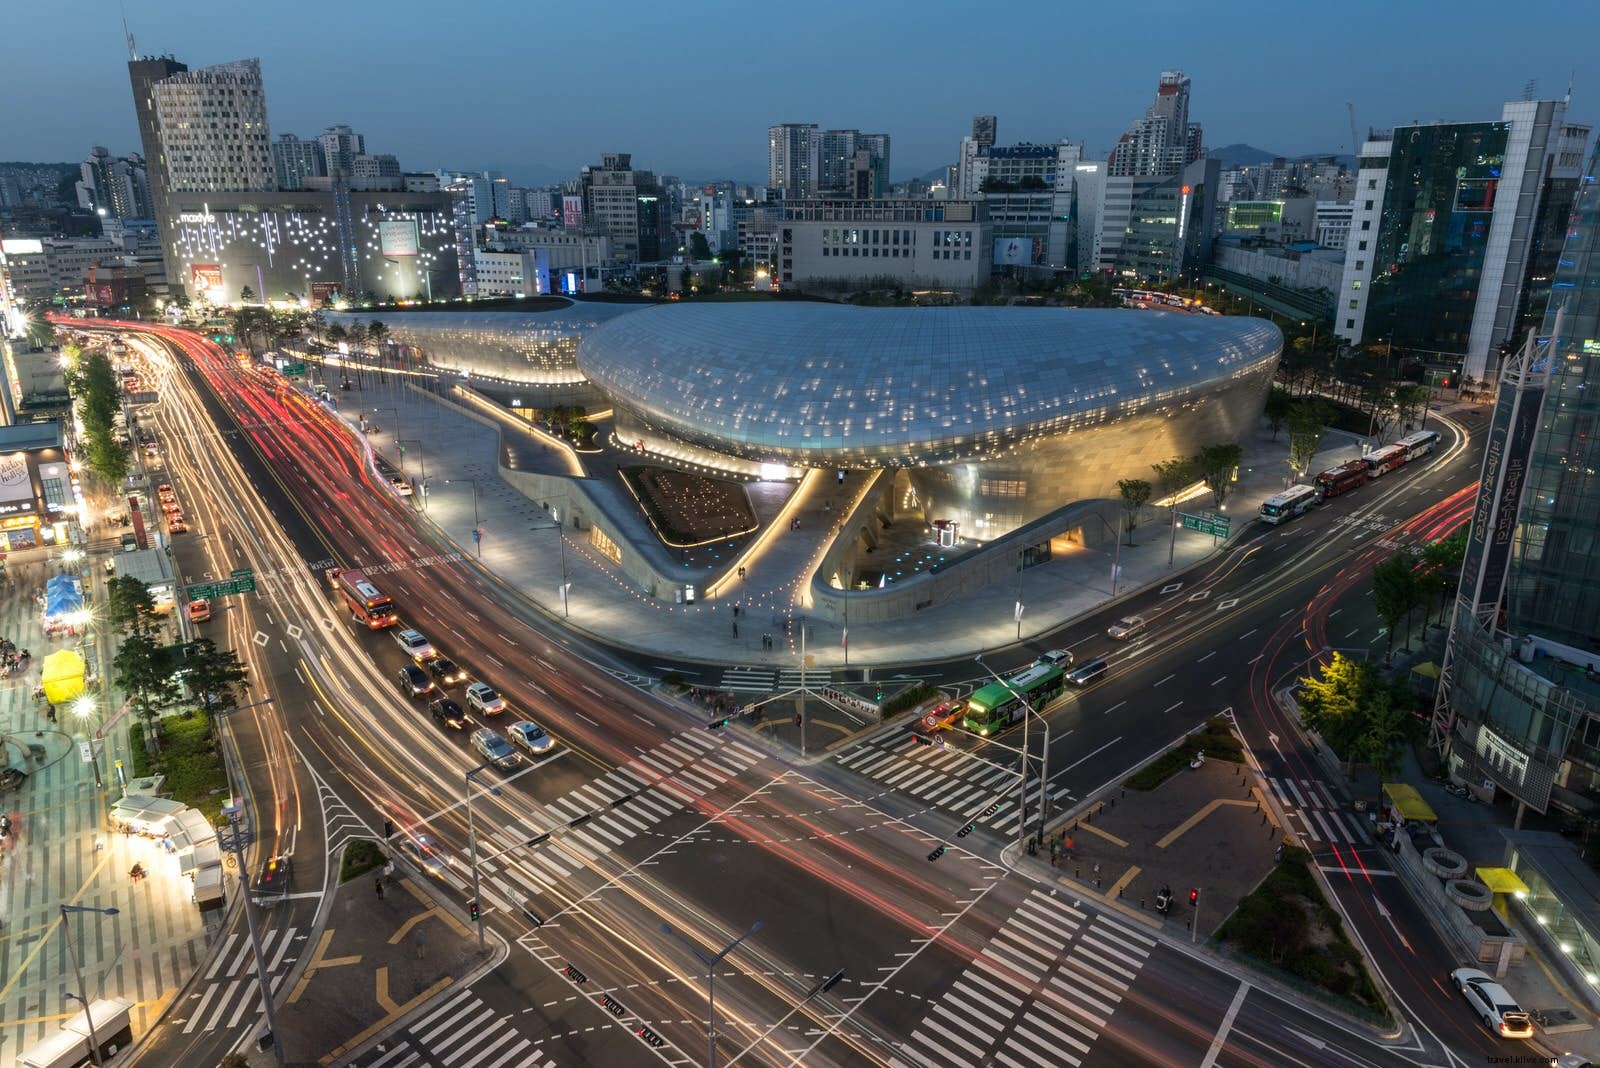 Pemandangan kota Seoul yang dinamis:tur arsitektur melalui ibu kota Korea Selatan 